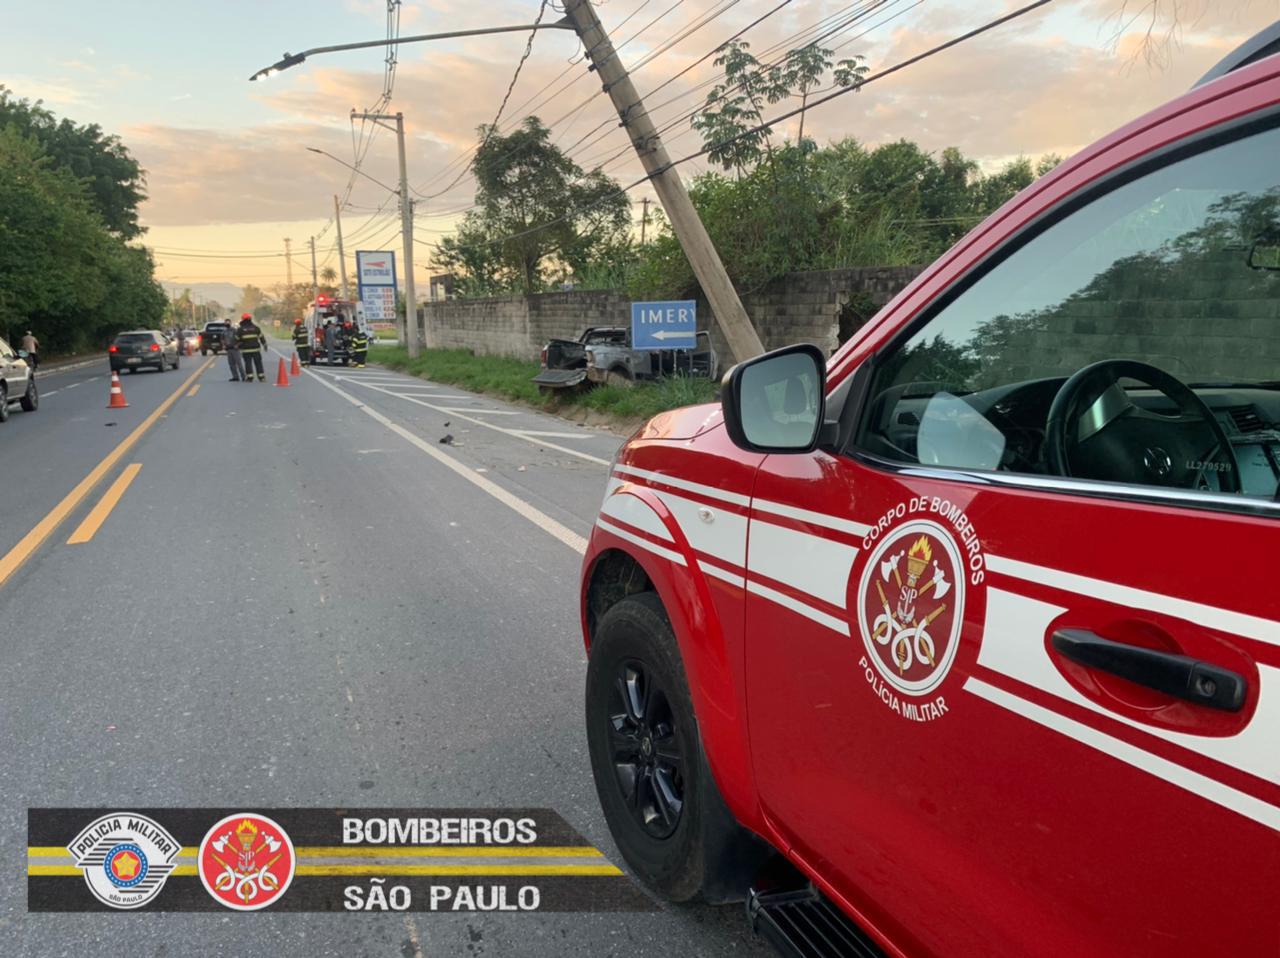 viatura dos bombeiros vermelha e amarela é conduzida pela rua; homem morreu em incêndio na zona leste de sao jose